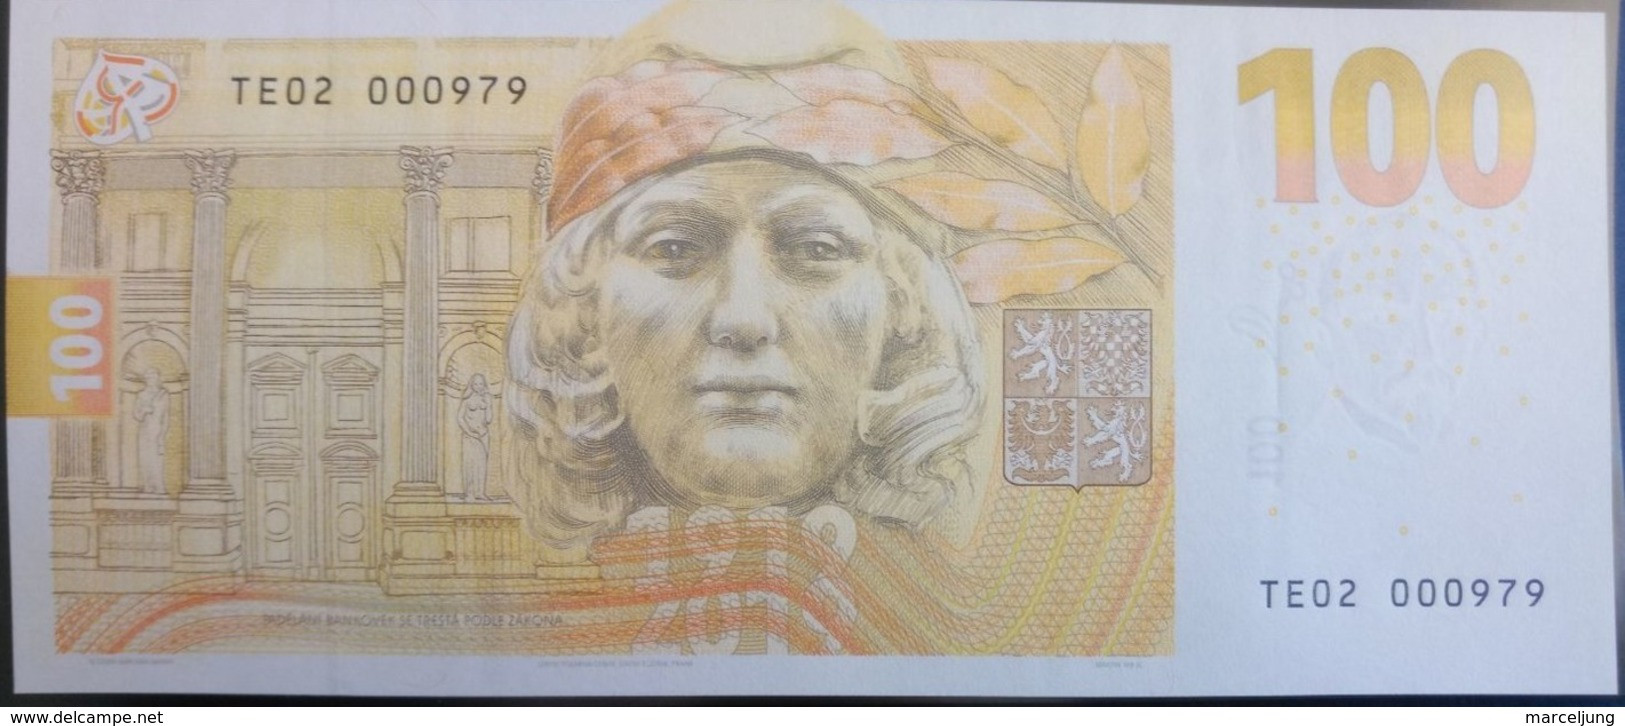 100 Korun/Kronen Czech Republic UNC 2019 Commemorative Banknote, Rare / GEDENKBANKNOTE SELTEN - Tsjechië